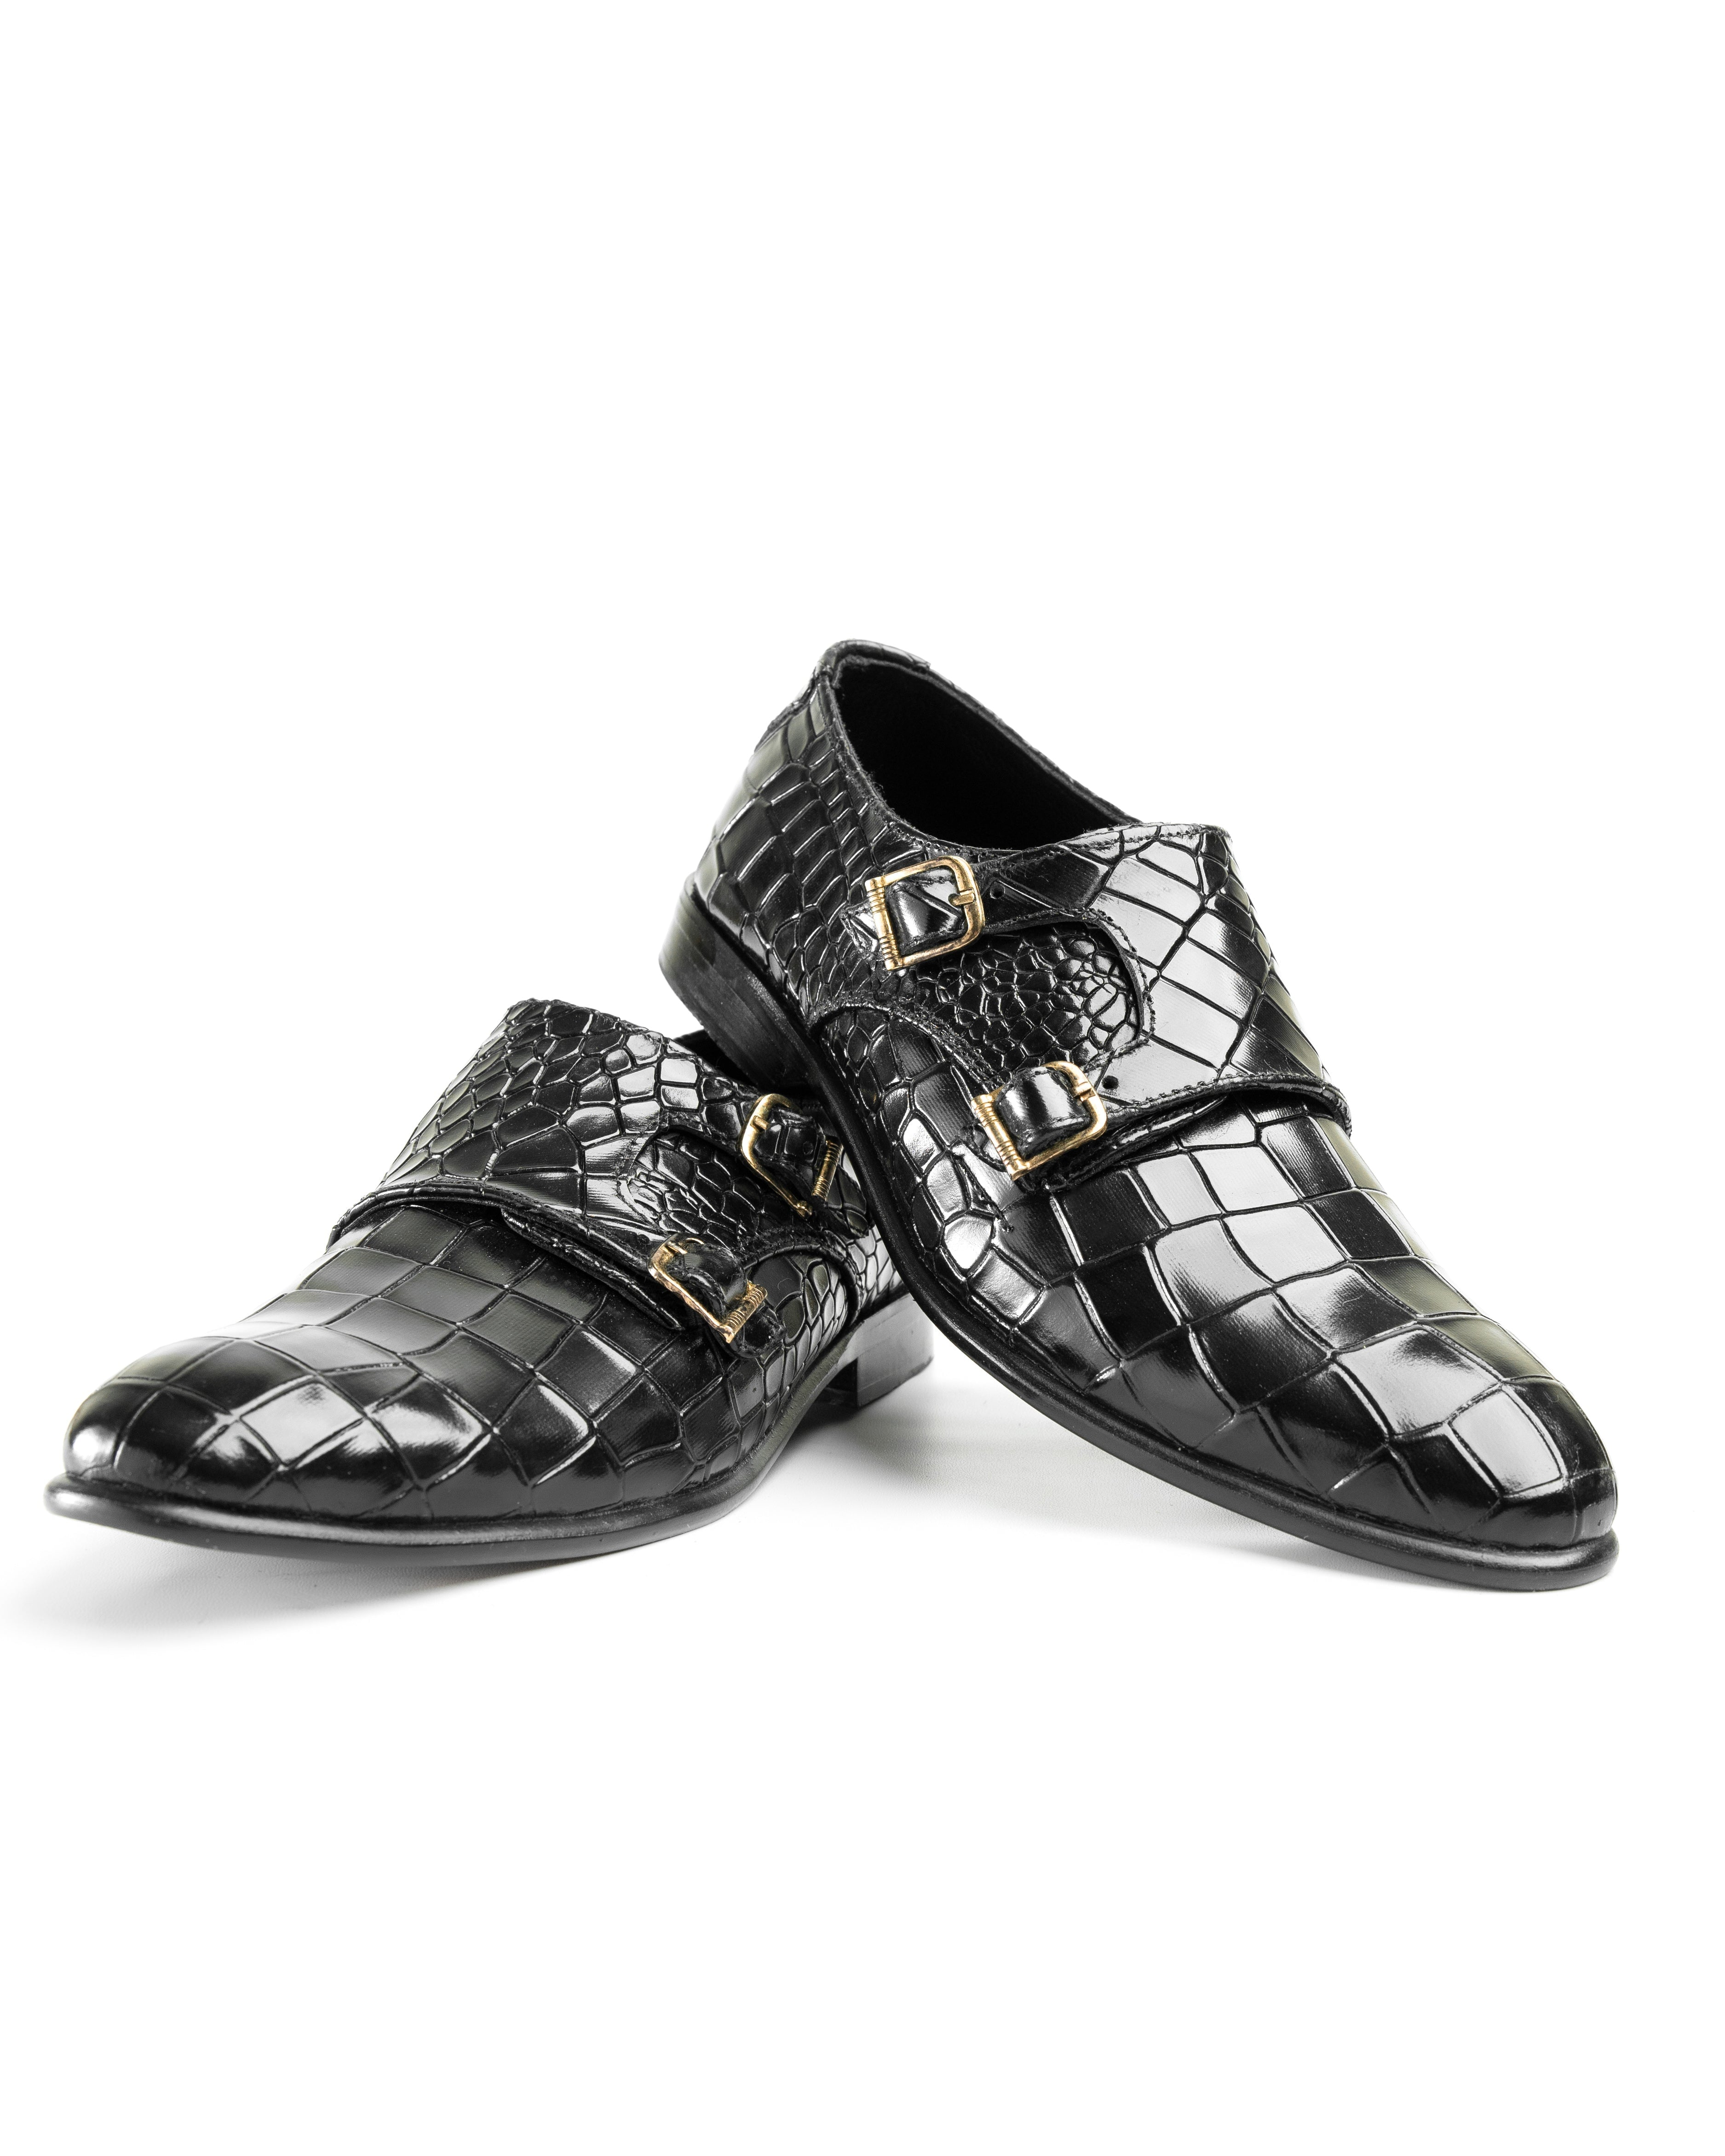 SNS5 Croc Style premium leather black shoe for men Shop n Save Pakistan